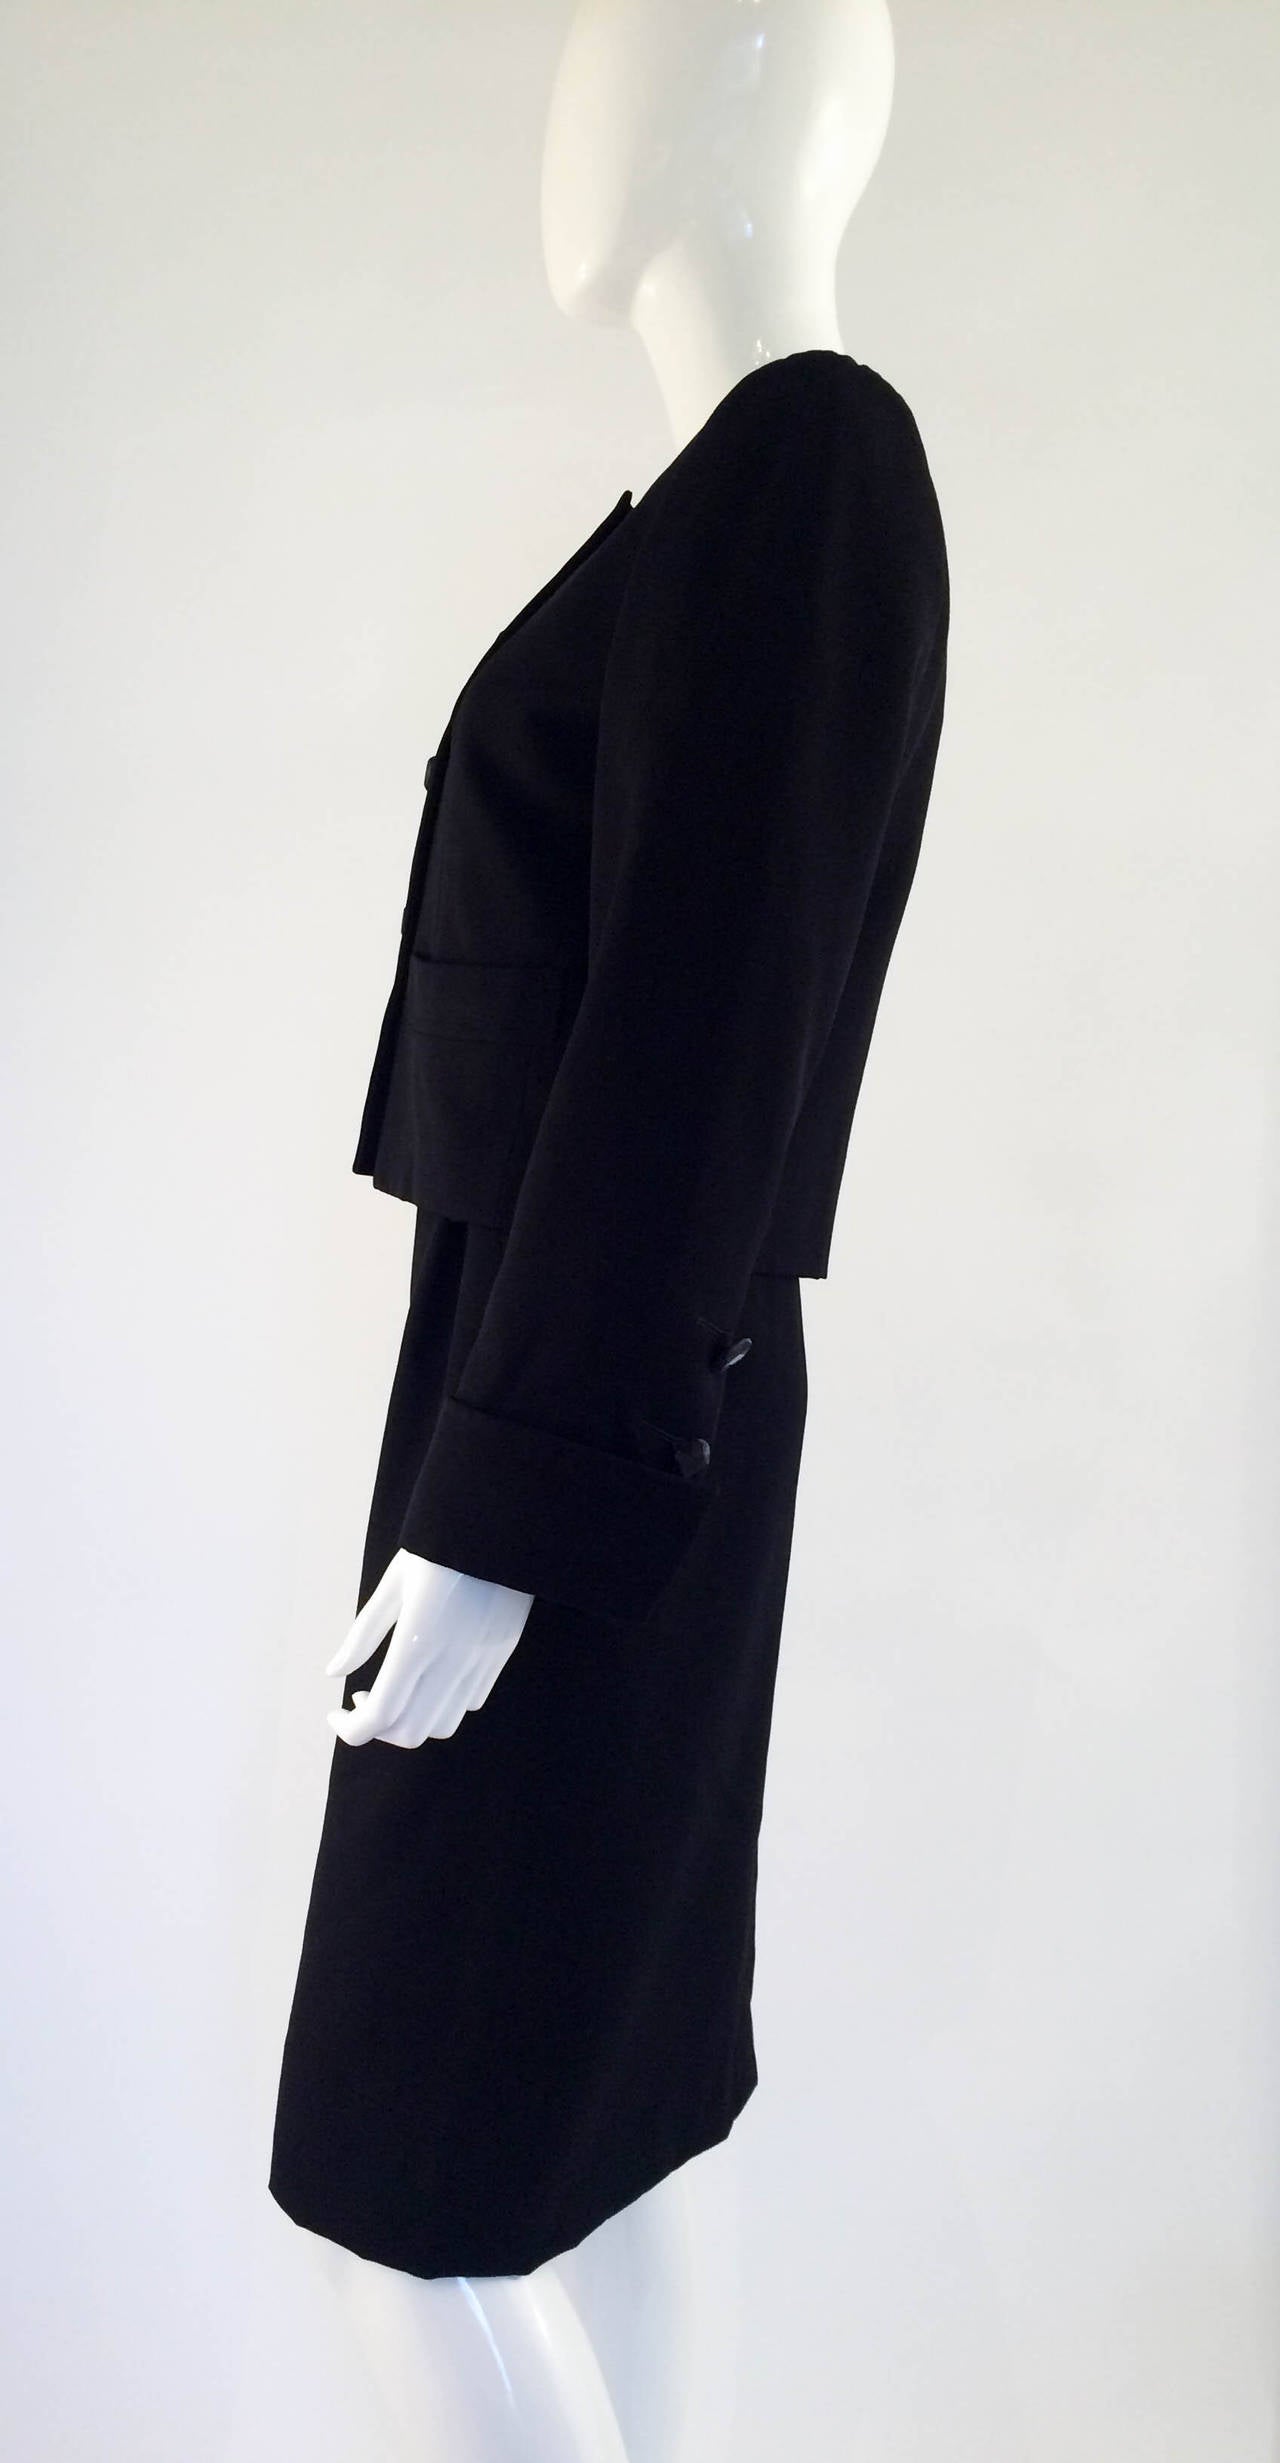 Black Yves Saint Laurent Wool Suit - 1990s